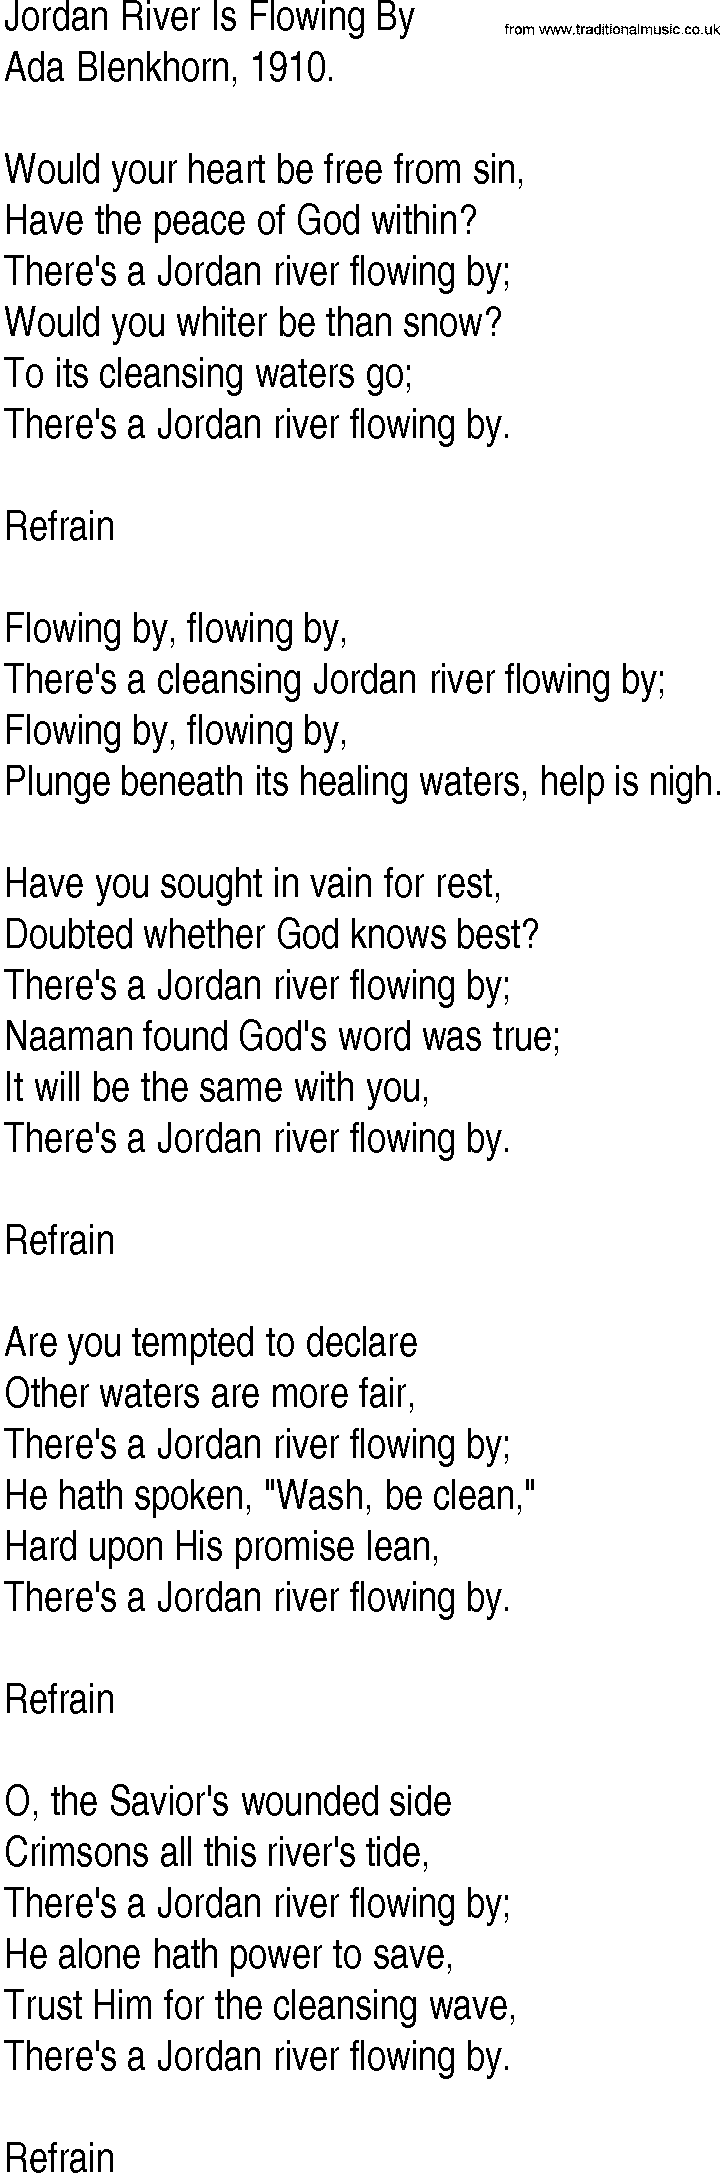 Hymn and Gospel Song: Jordan River Is Flowing By by Ada Blenkhorn lyrics